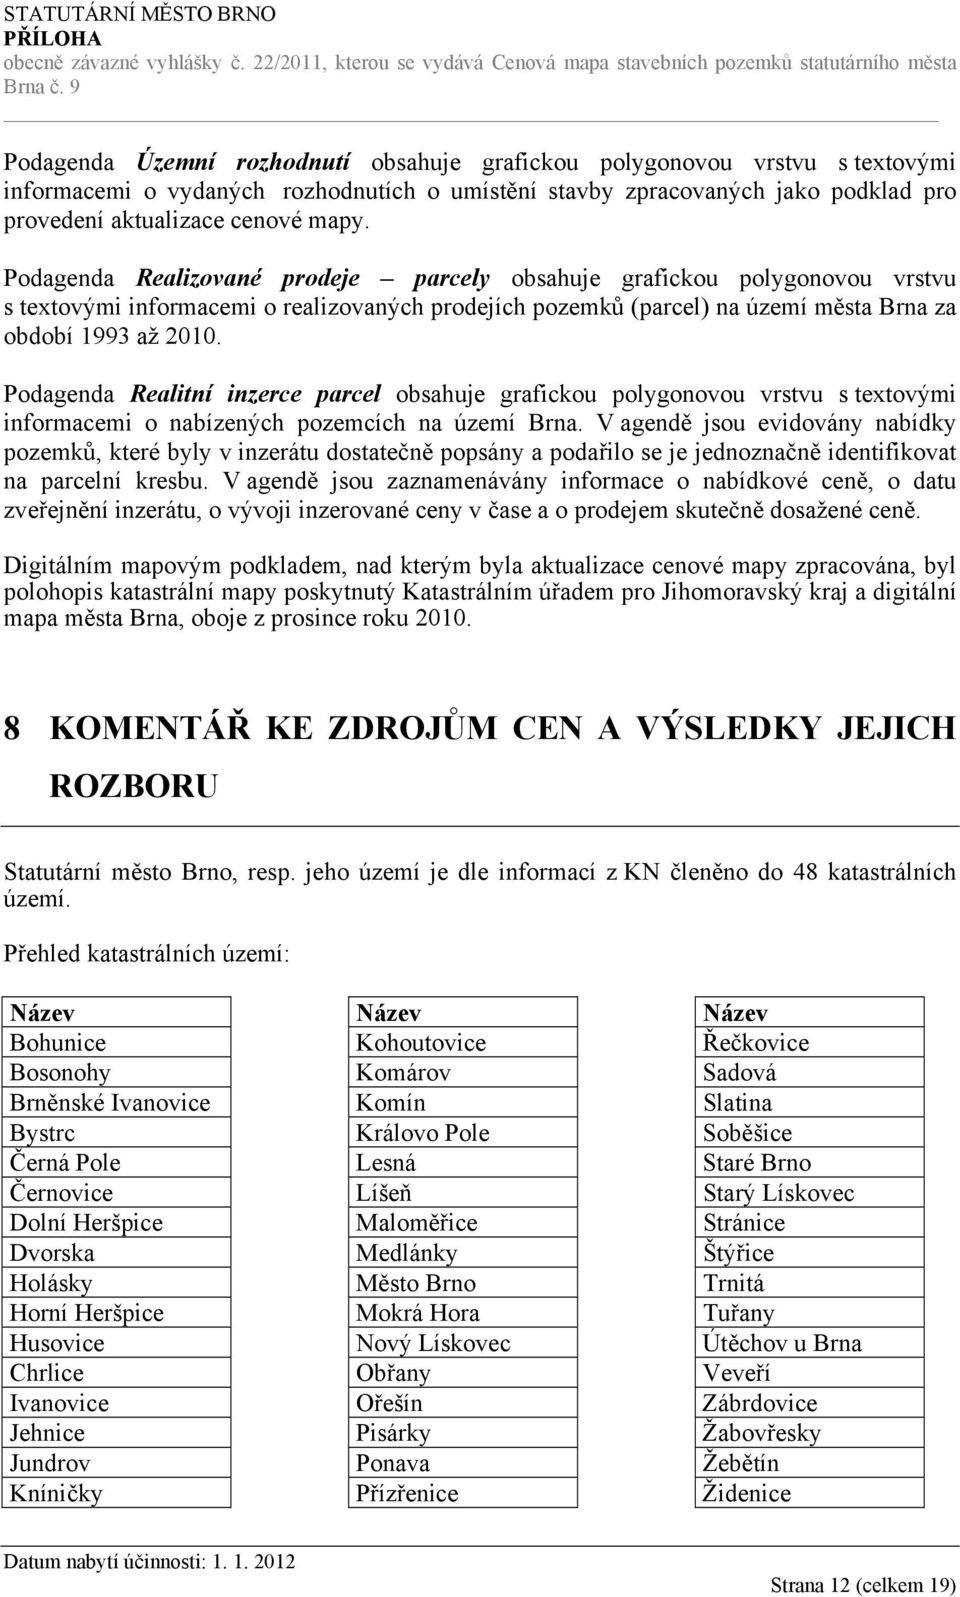 Podagenda Realitní inzerce parcel obsahuje grafickou polygonovou vrstvu s textovými informacemi o nabízených pozemcích na území Brna.